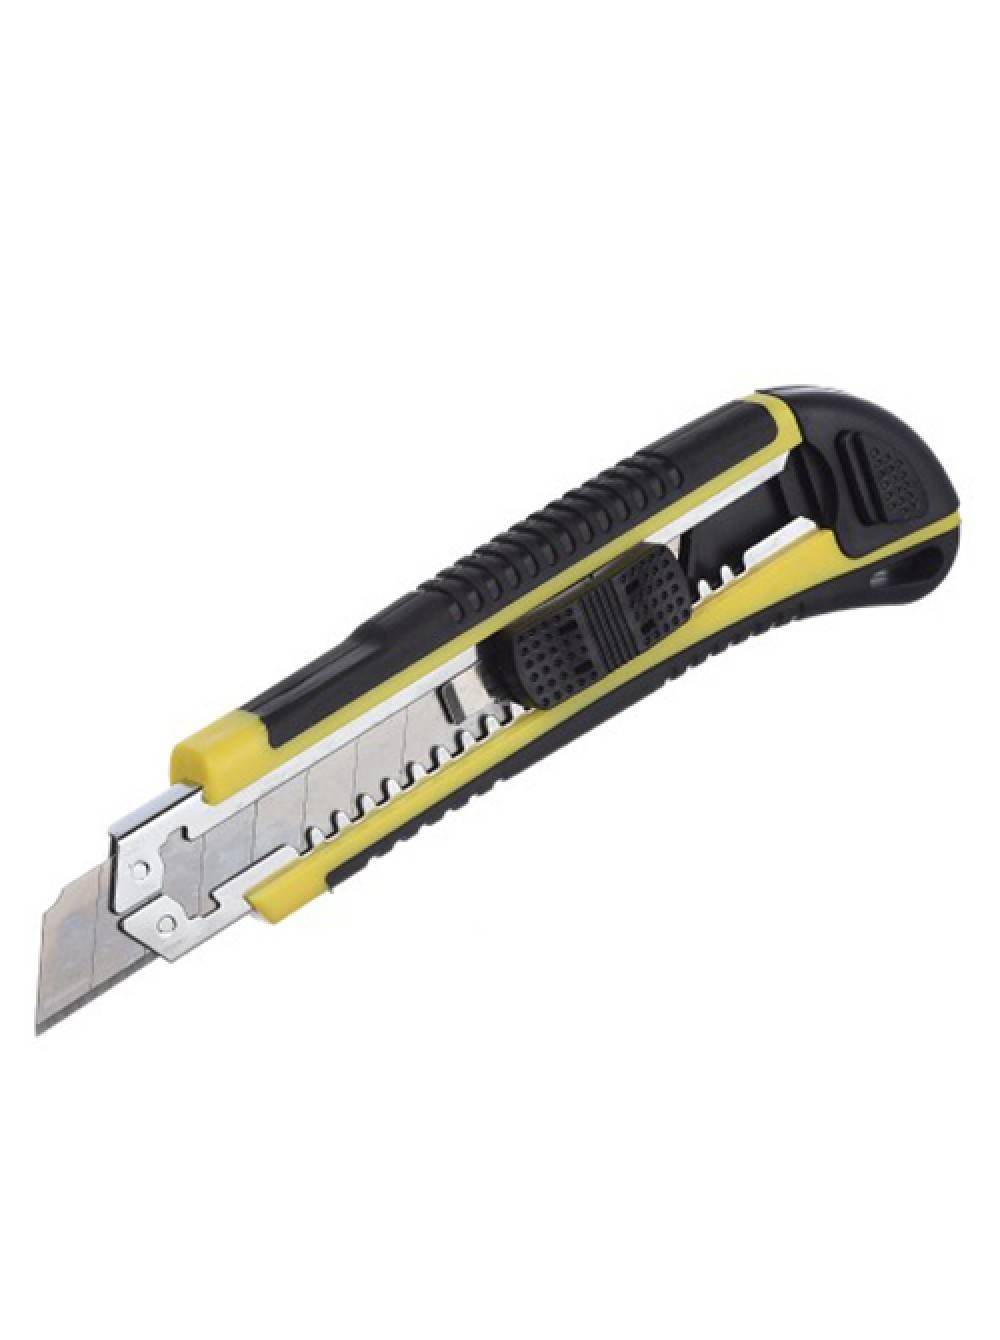 Строительные ножи | разновидности строительных ножей